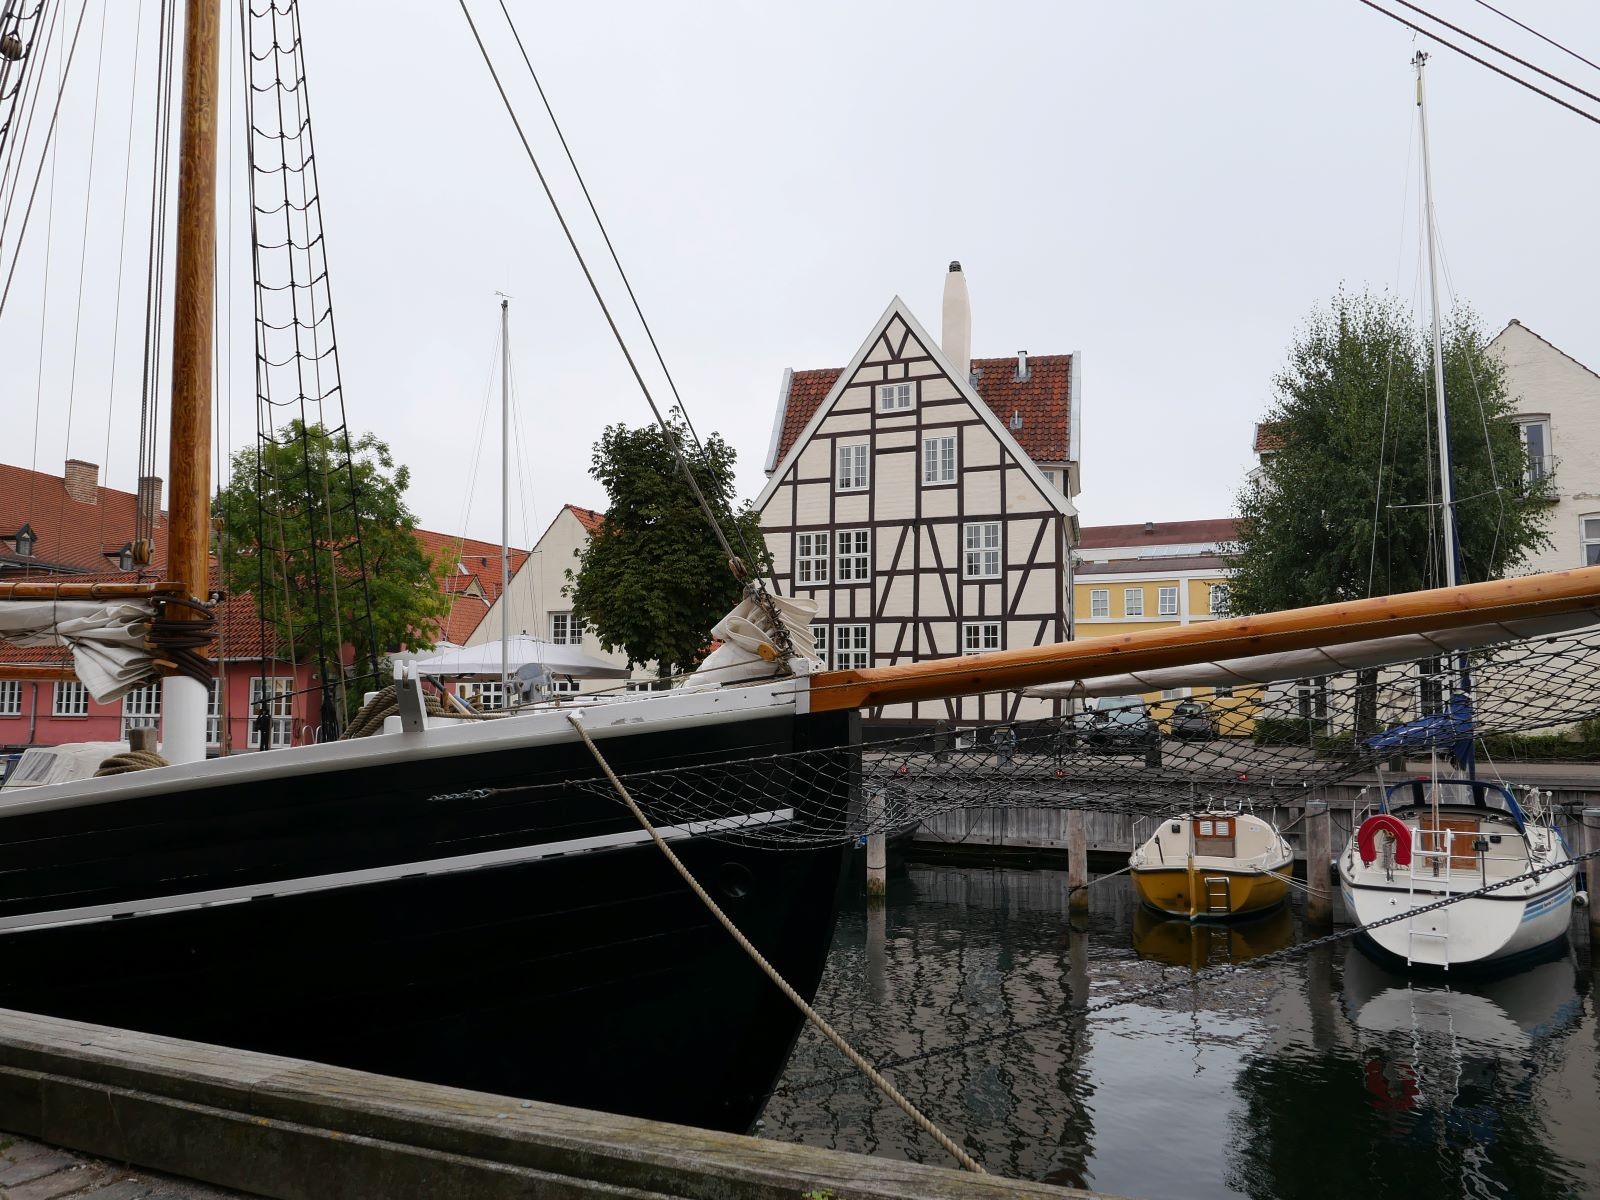 Η περιοχή Christianshavn